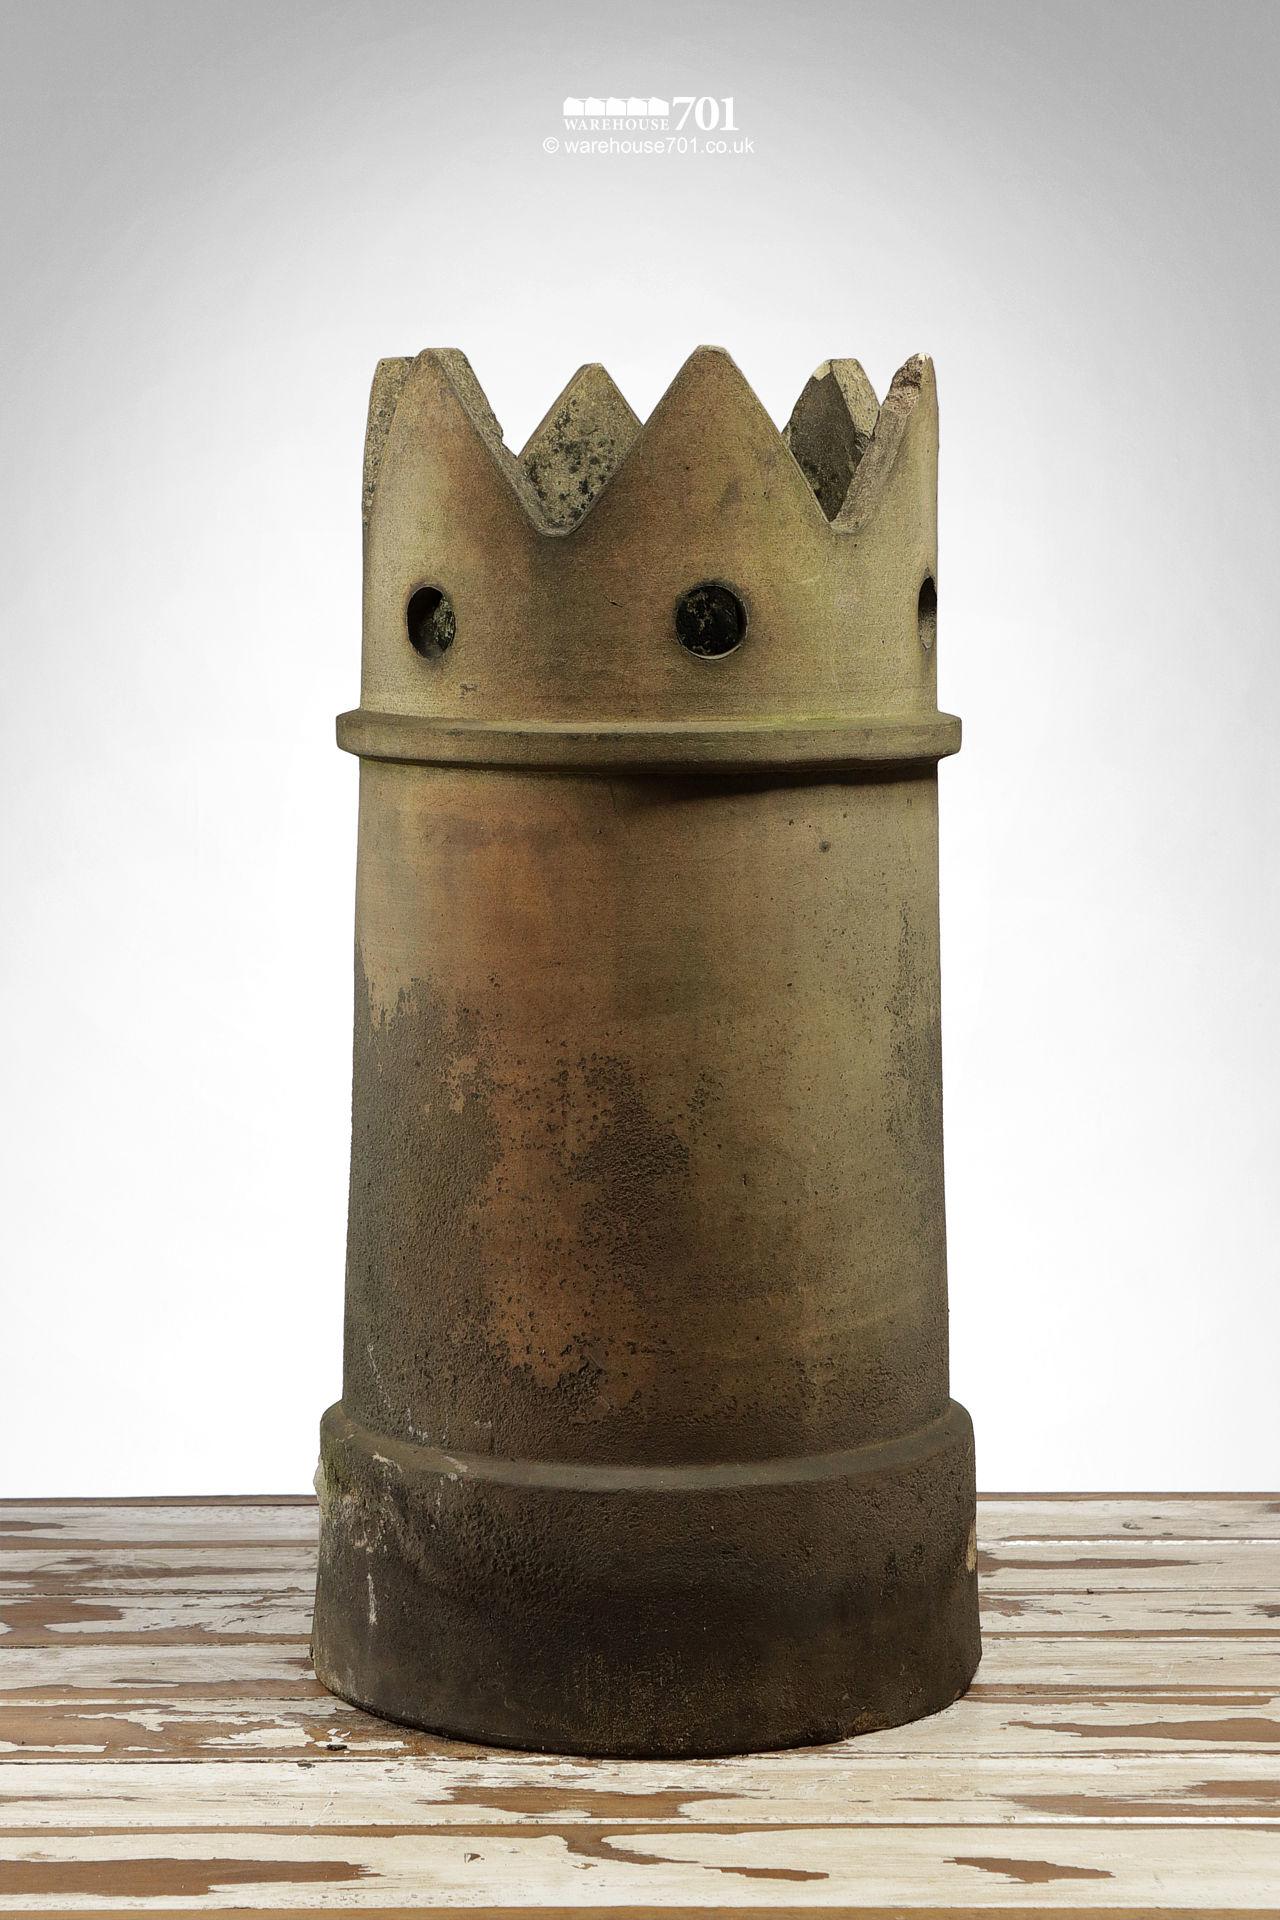 Salvaged George Skey Crown Chimney Pot #2